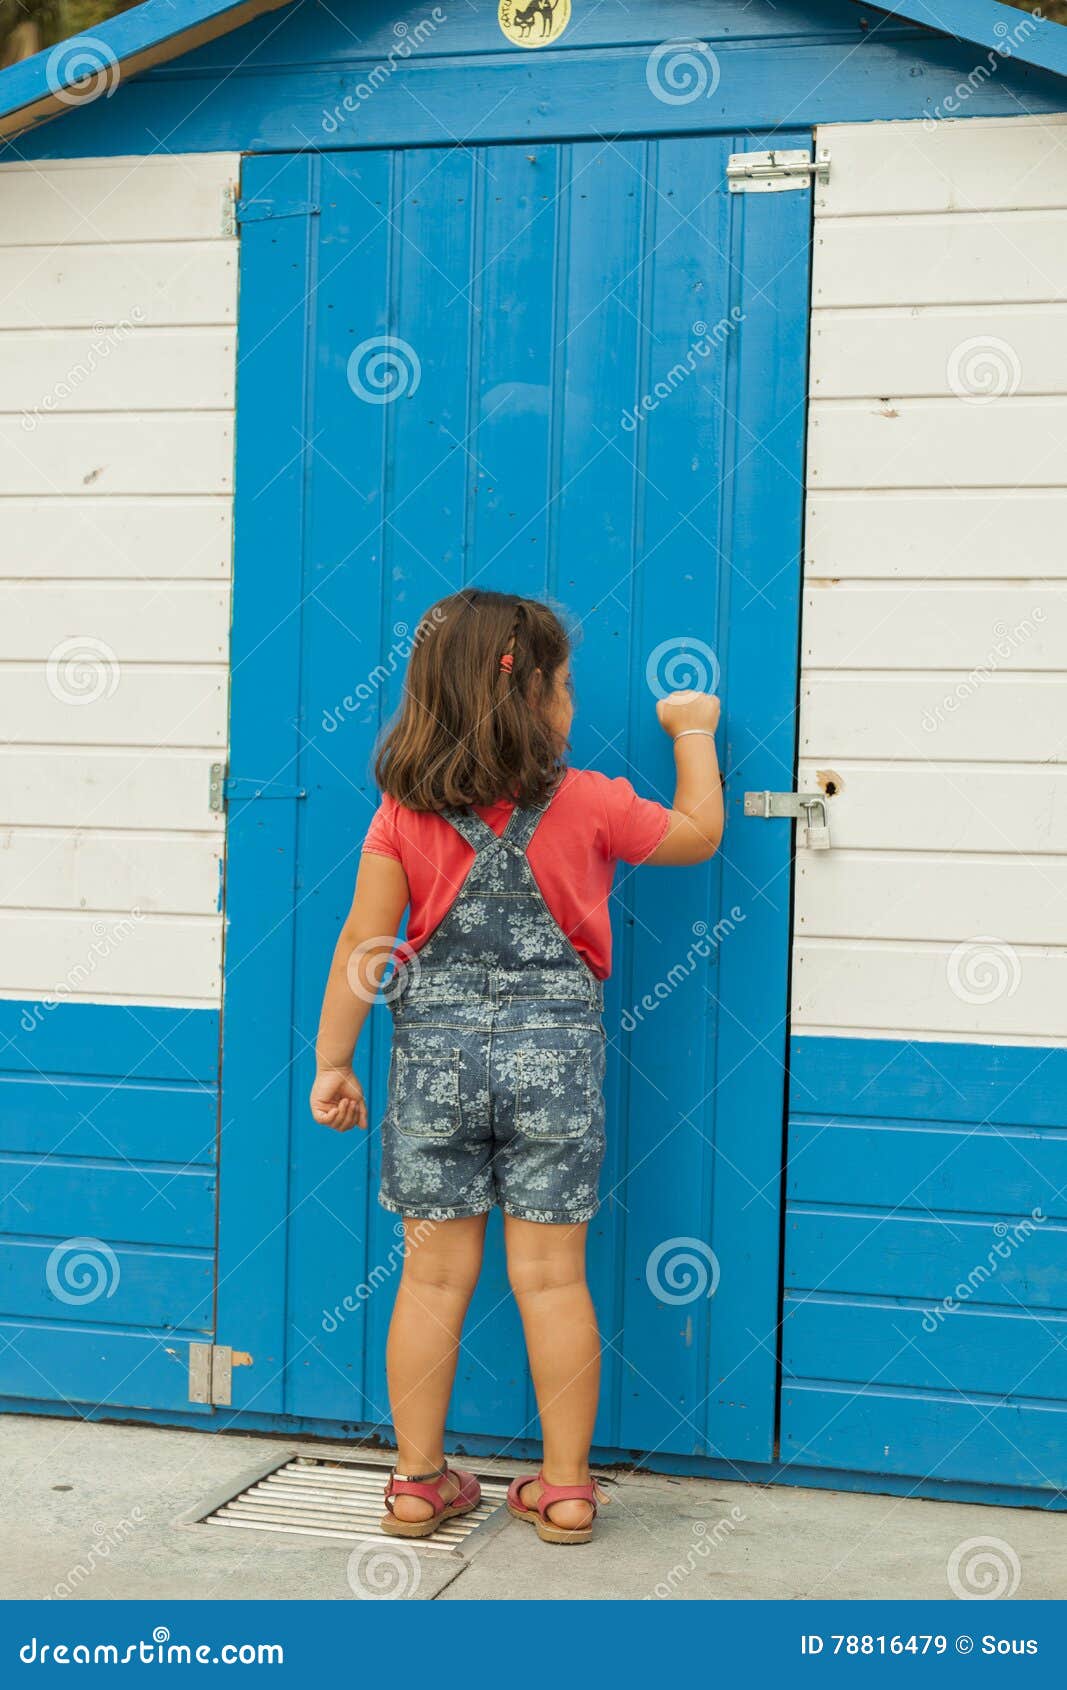 Дети стучат в дверь. Девочка стучится в дверь. Девочка стучит в дверь. Мальчик стучится в дверь. Мальчик стучит в дверь.